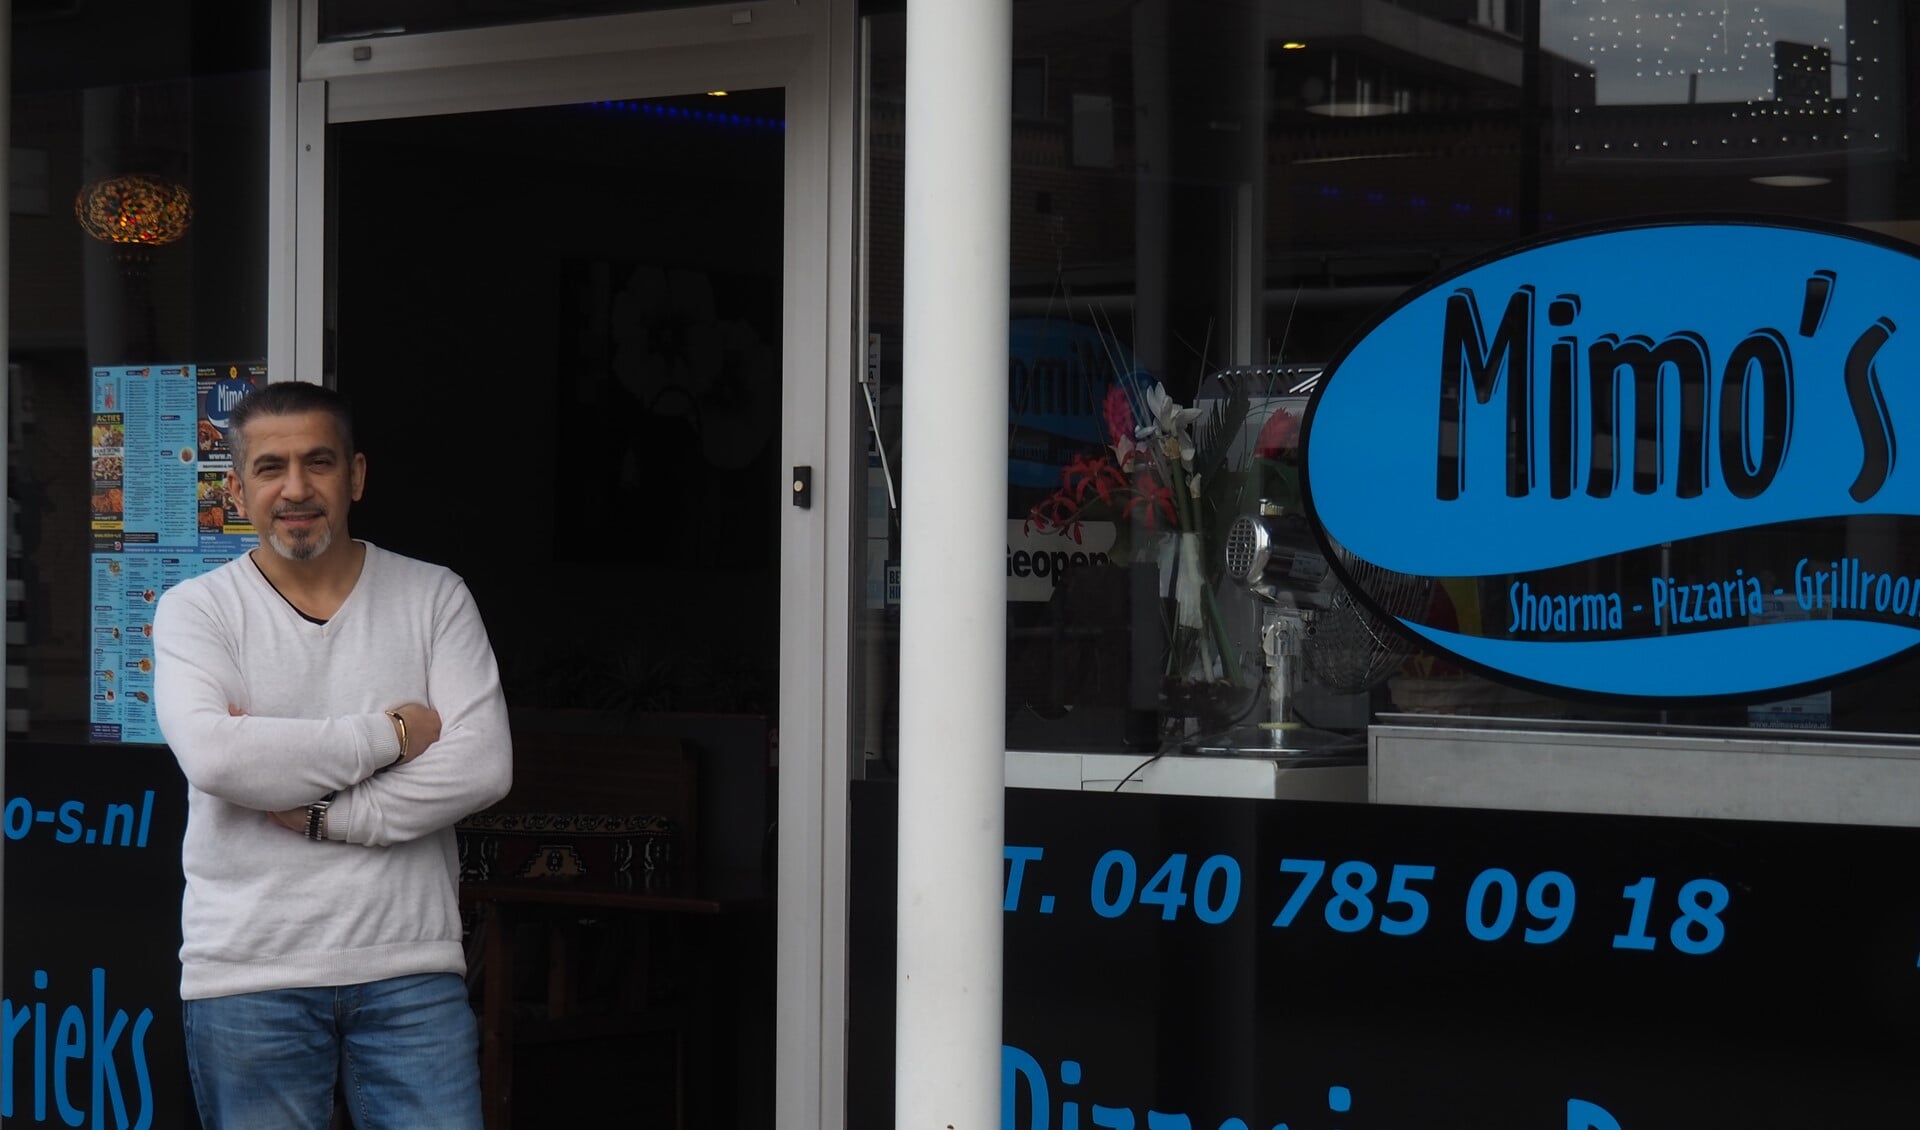 Mehmet Aslan (54) runt al 10 jaar kebabzaak Mimo’s met succes (Foto: Noortje de Vries)